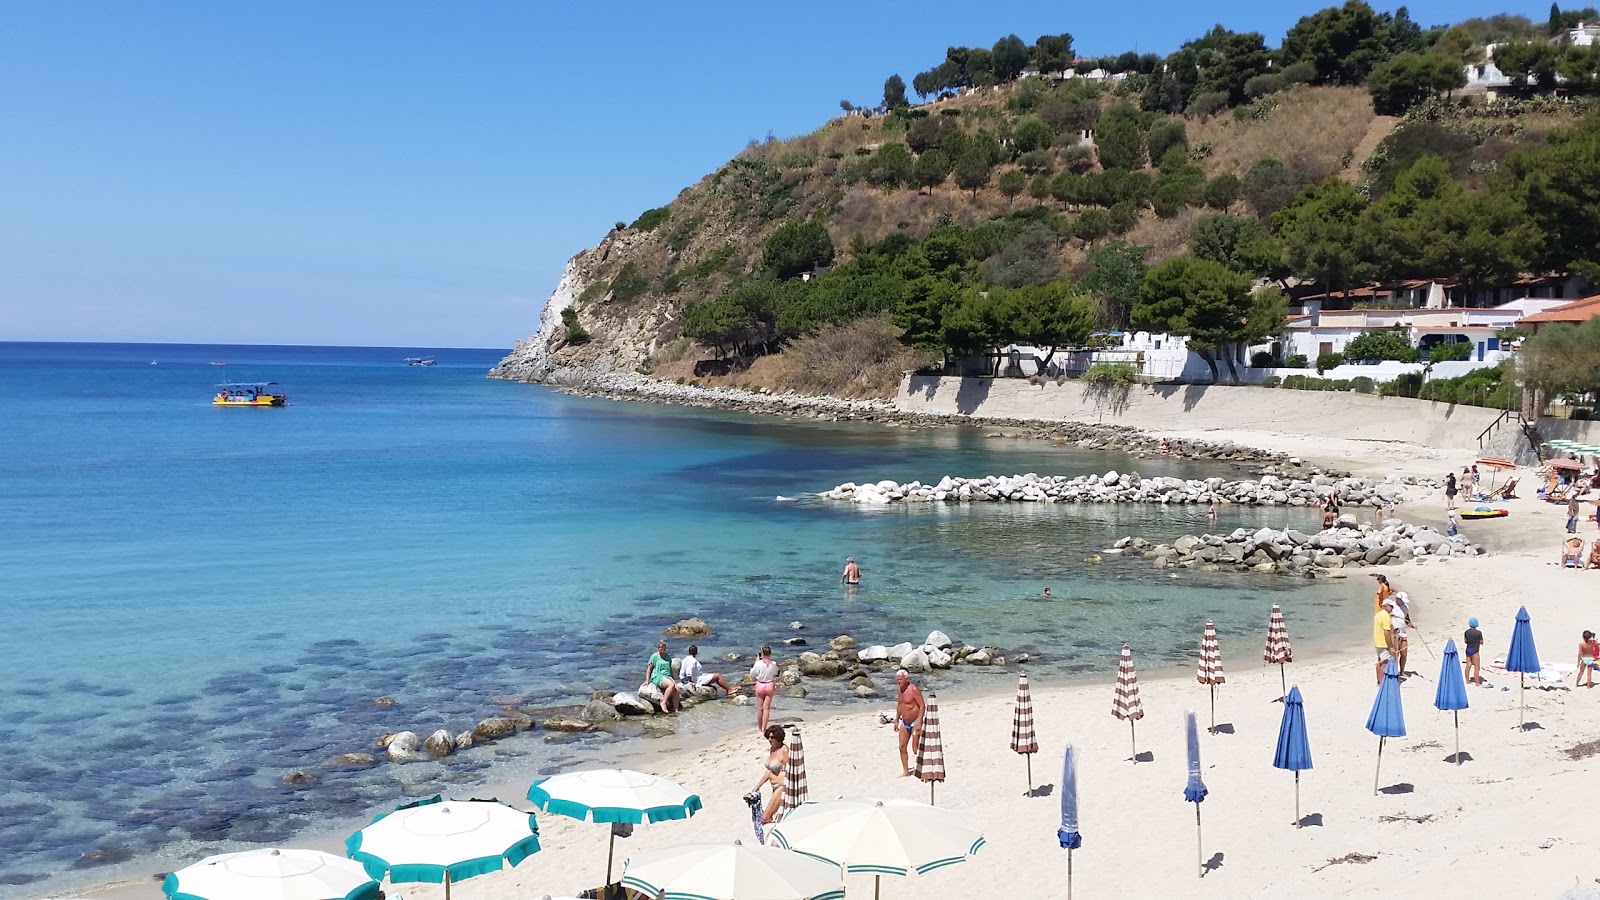 Spiaggia Santa Maria'in fotoğrafı plaj tatil beldesi alanı